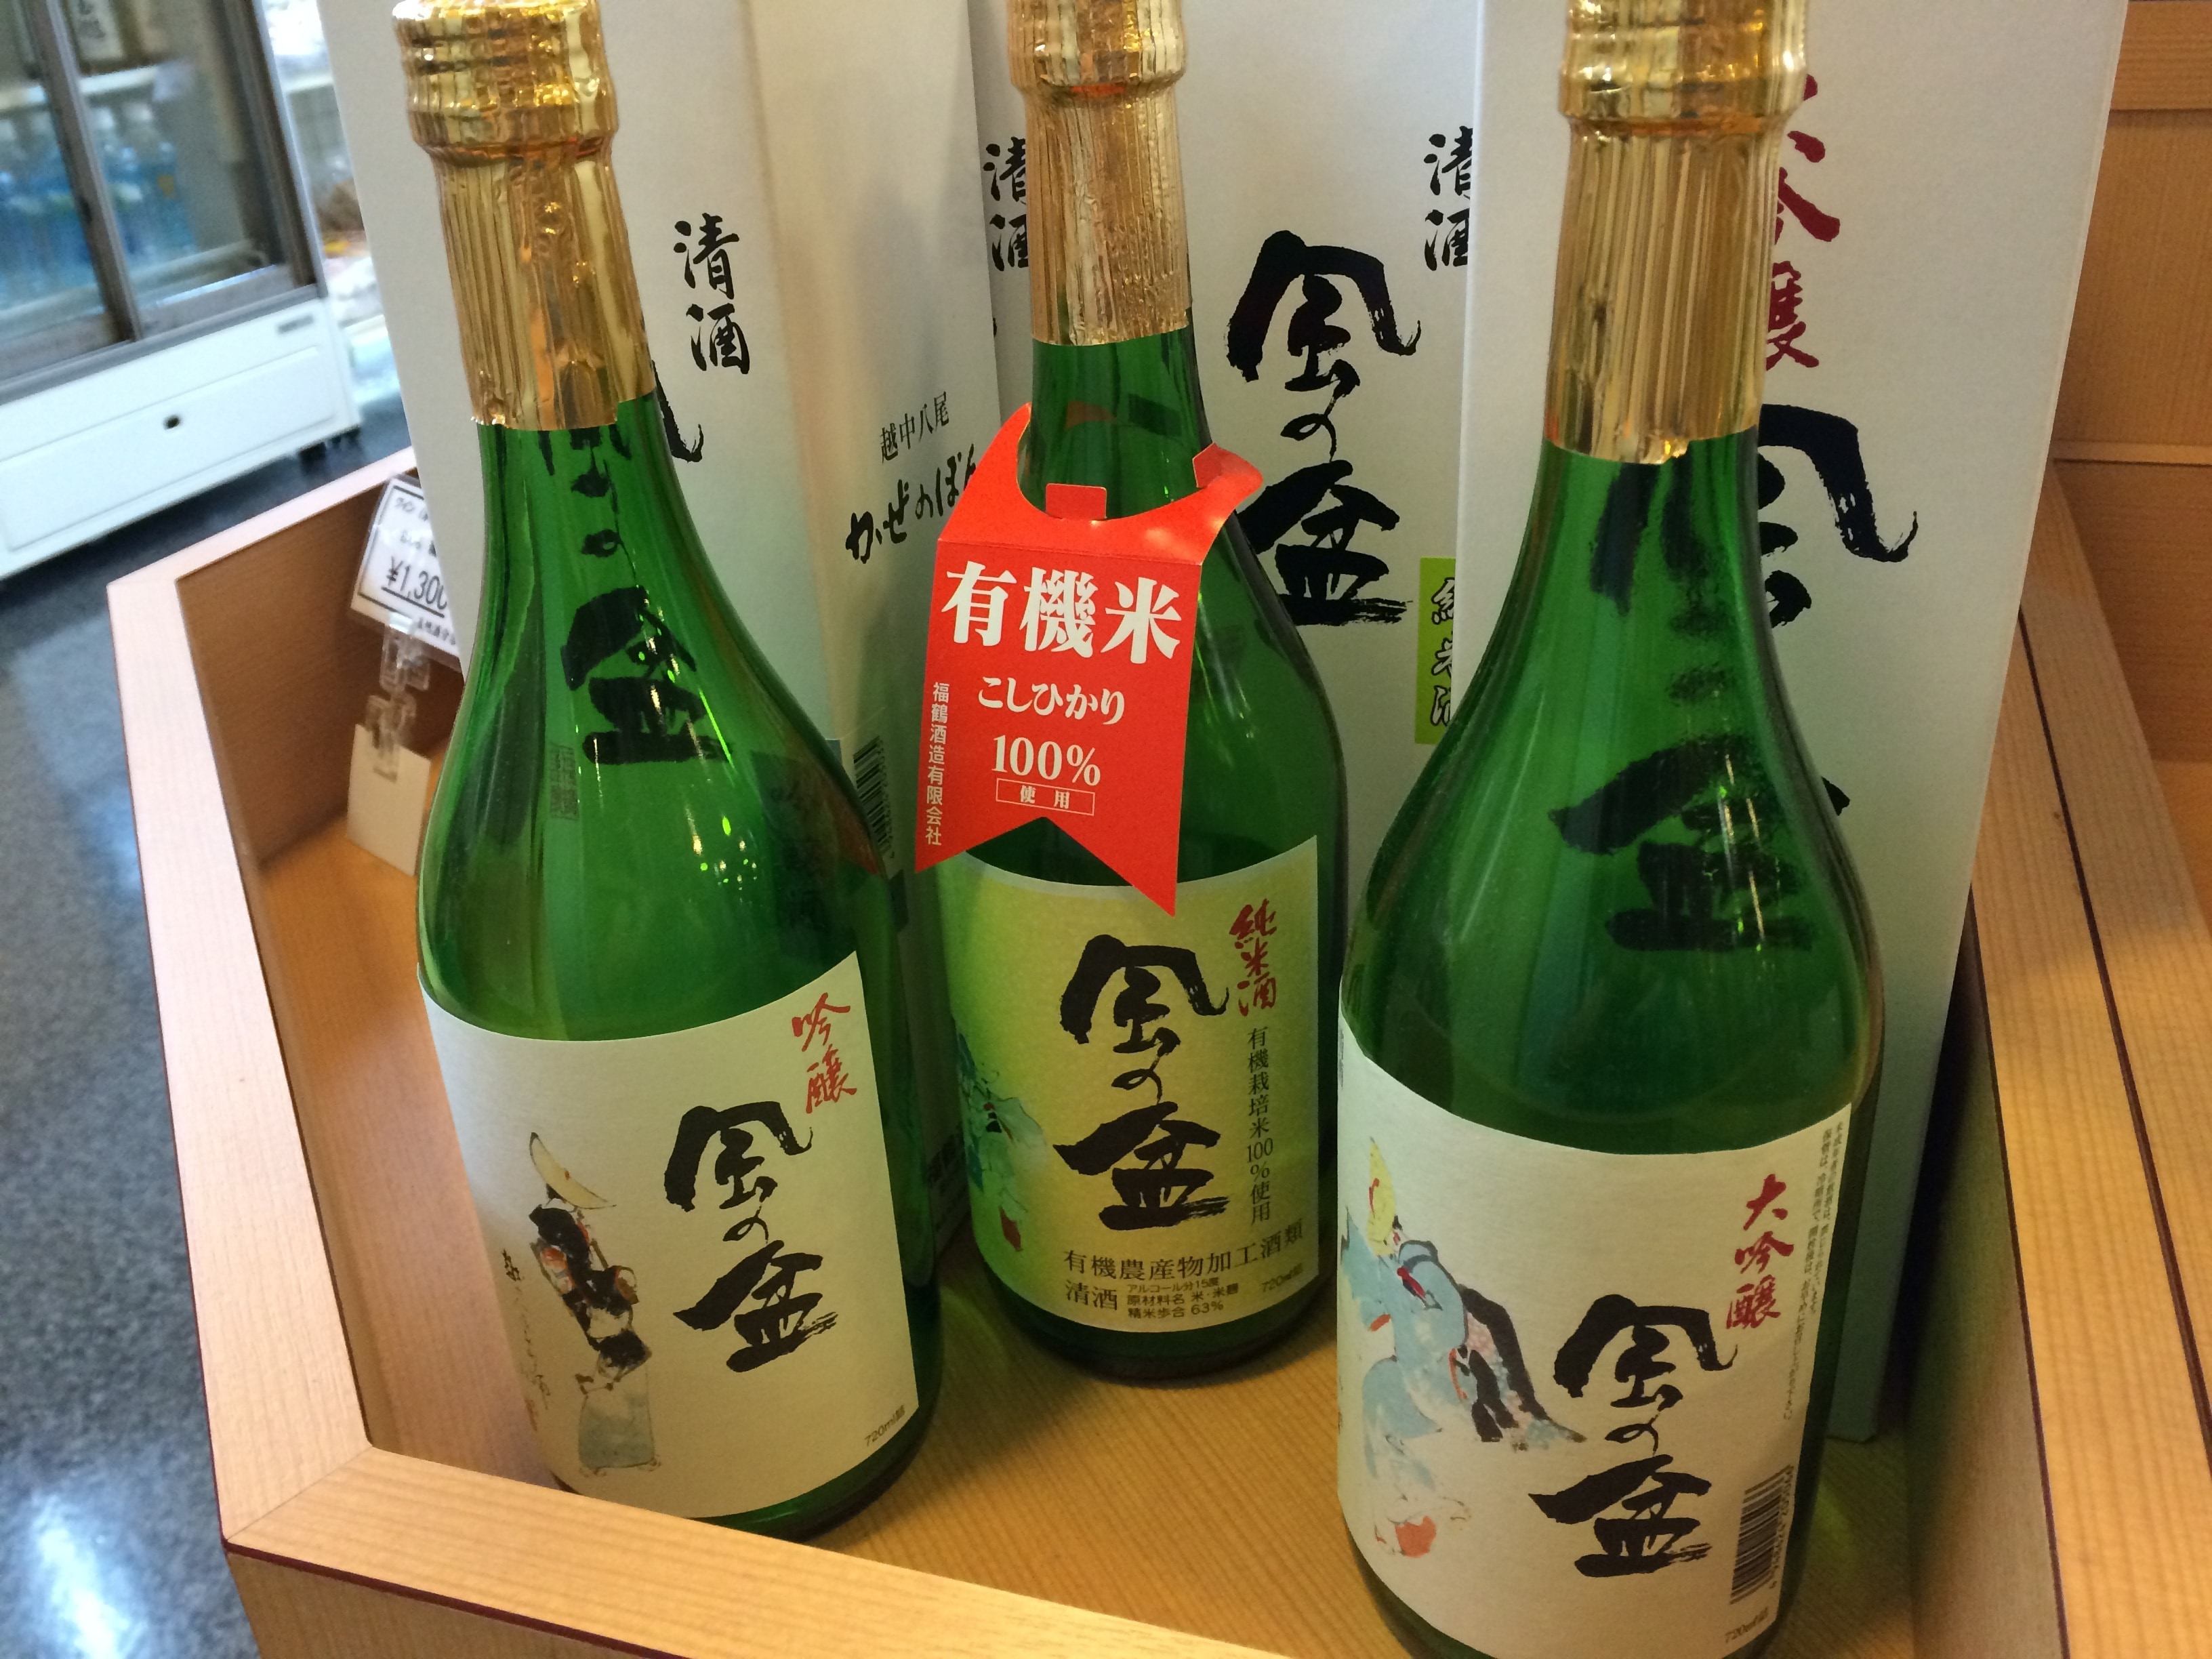 three sake glass bottles near white boxes